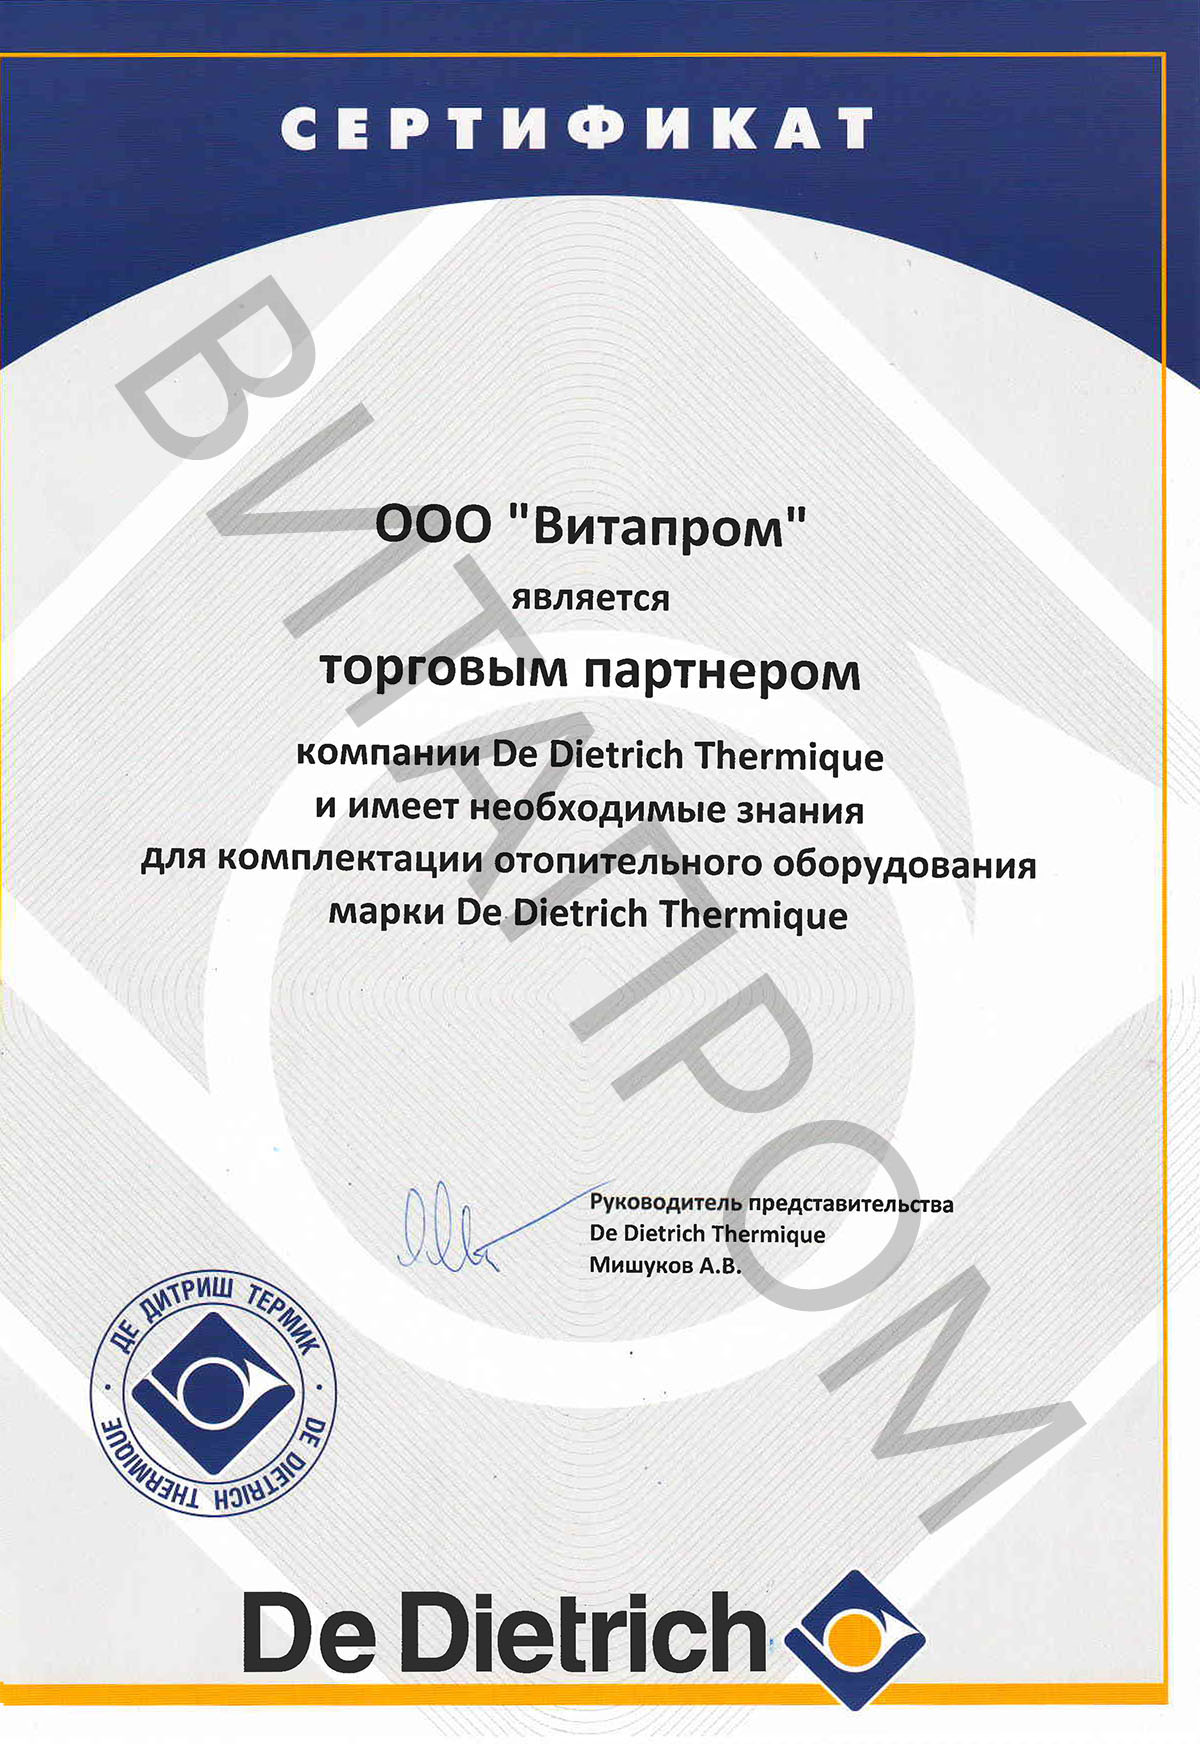 Сертификат торгового партнера De Dietrich